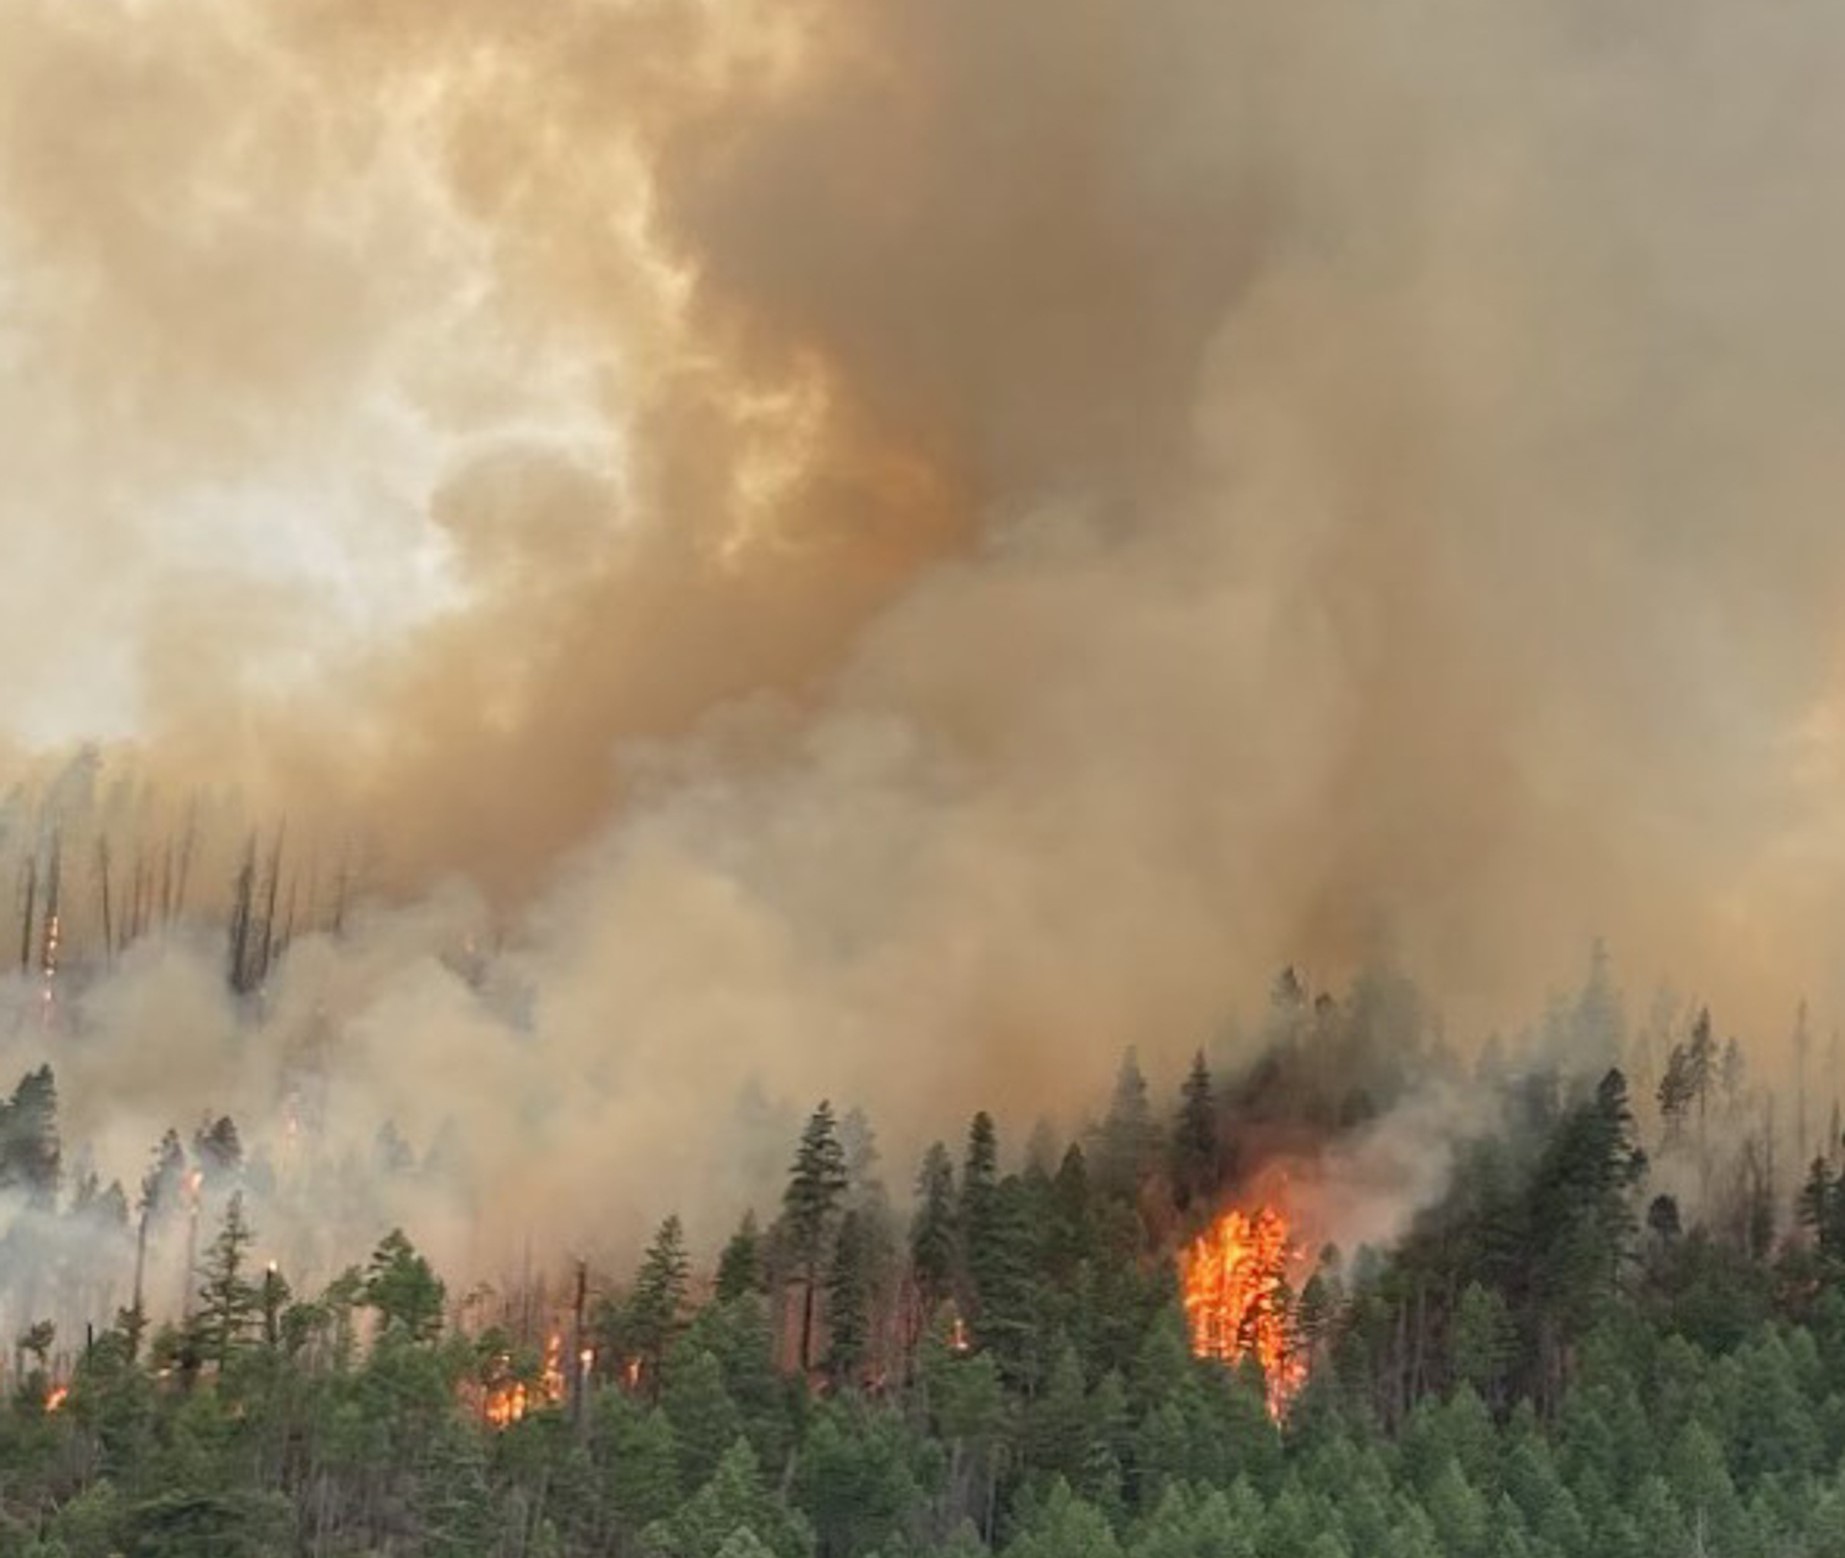 Klamath Basin News, martes 22 de agosto – Pronóstico de más lluvia en la cuenca; Los incendios forestales de Oregón y el norte de California aún cubren el noroeste